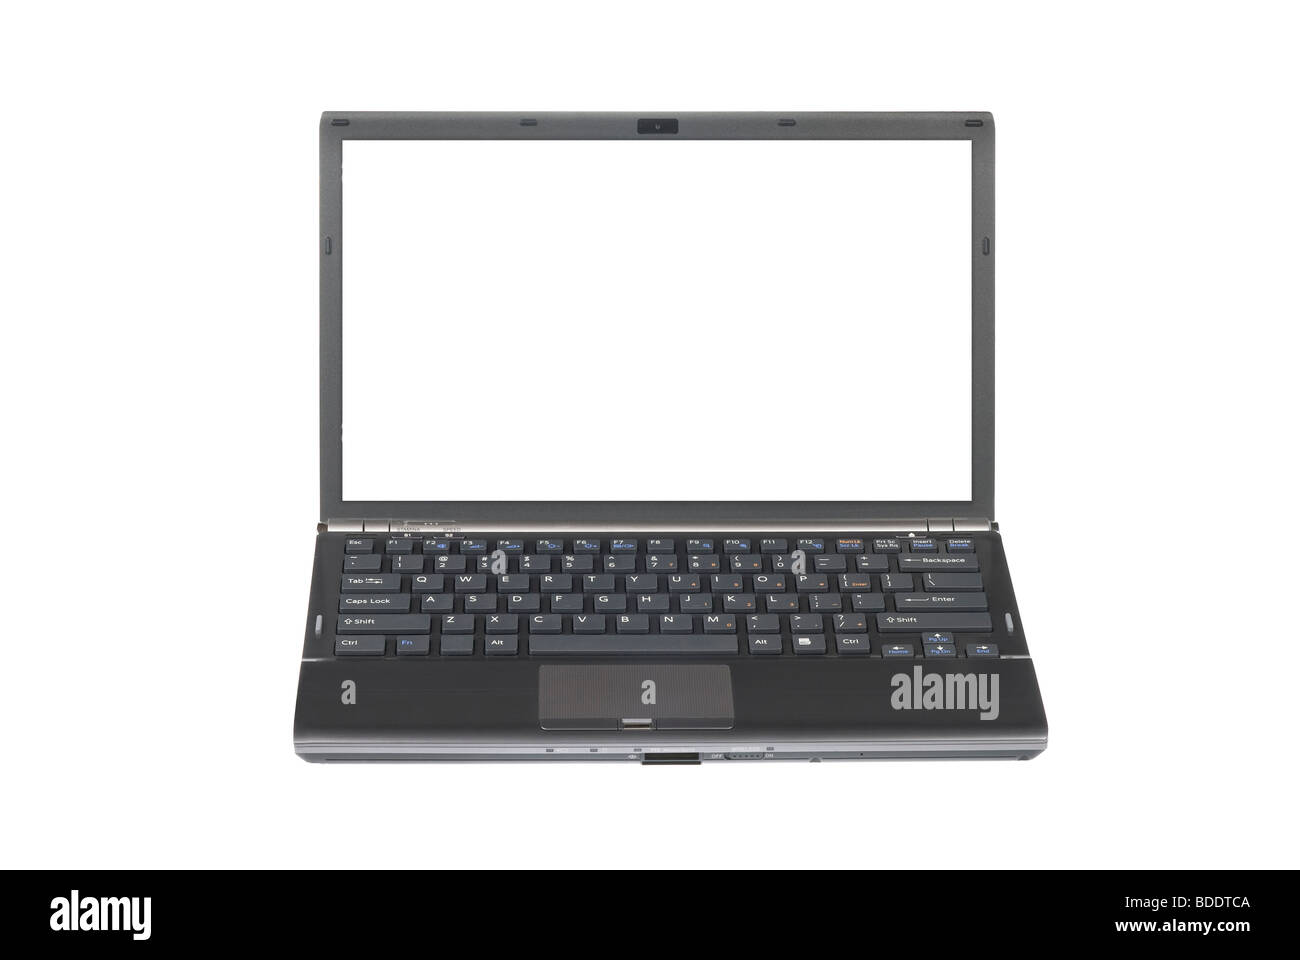 Un ordinateur portable avec chemin de détourage autour de l'écran permet aux concepteurs d'insérer une image derrière l'écran ou placez copie sur elle. Banque D'Images